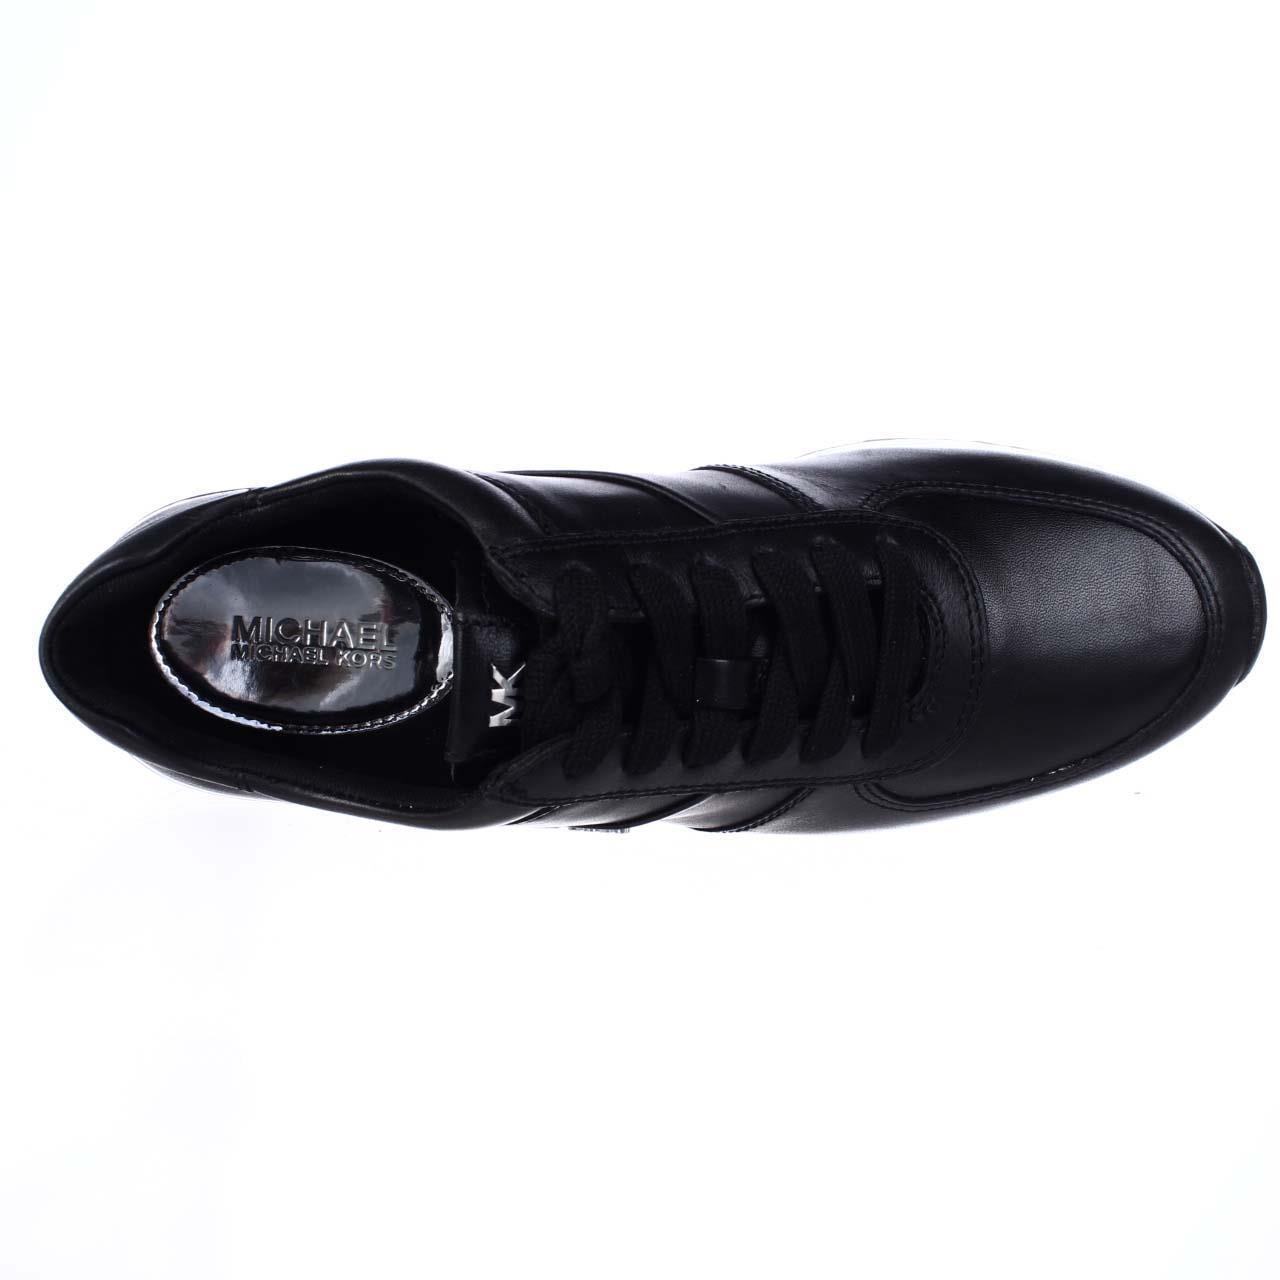 michael kors allie trainer sneakers black